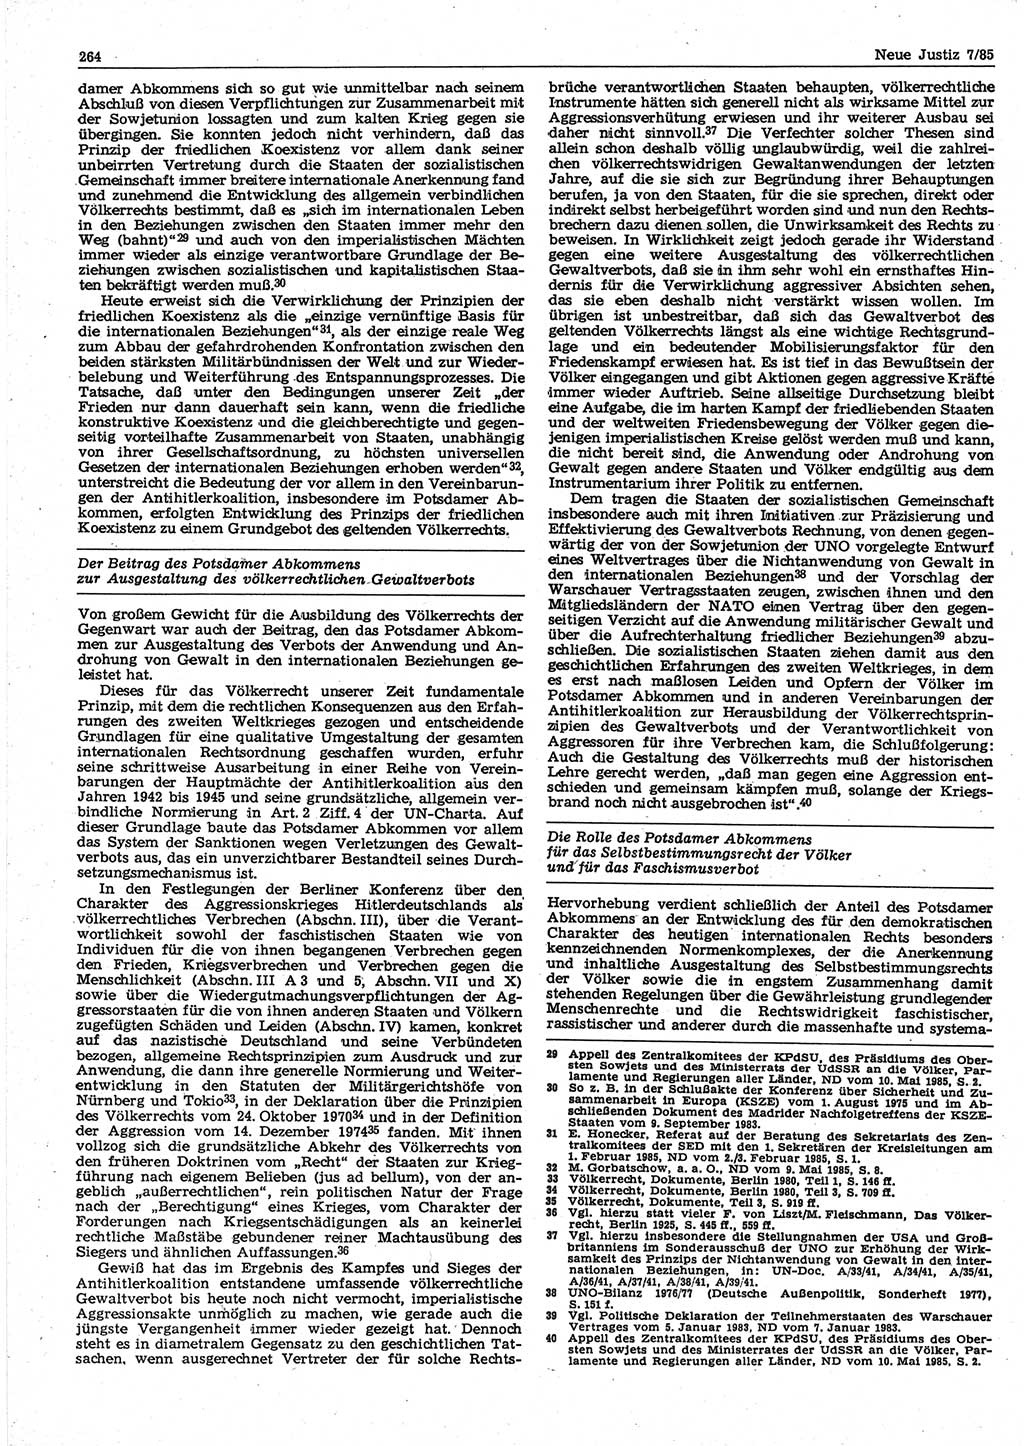 Neue Justiz (NJ), Zeitschrift für sozialistisches Recht und Gesetzlichkeit [Deutsche Demokratische Republik (DDR)], 39. Jahrgang 1985, Seite 264 (NJ DDR 1985, S. 264)